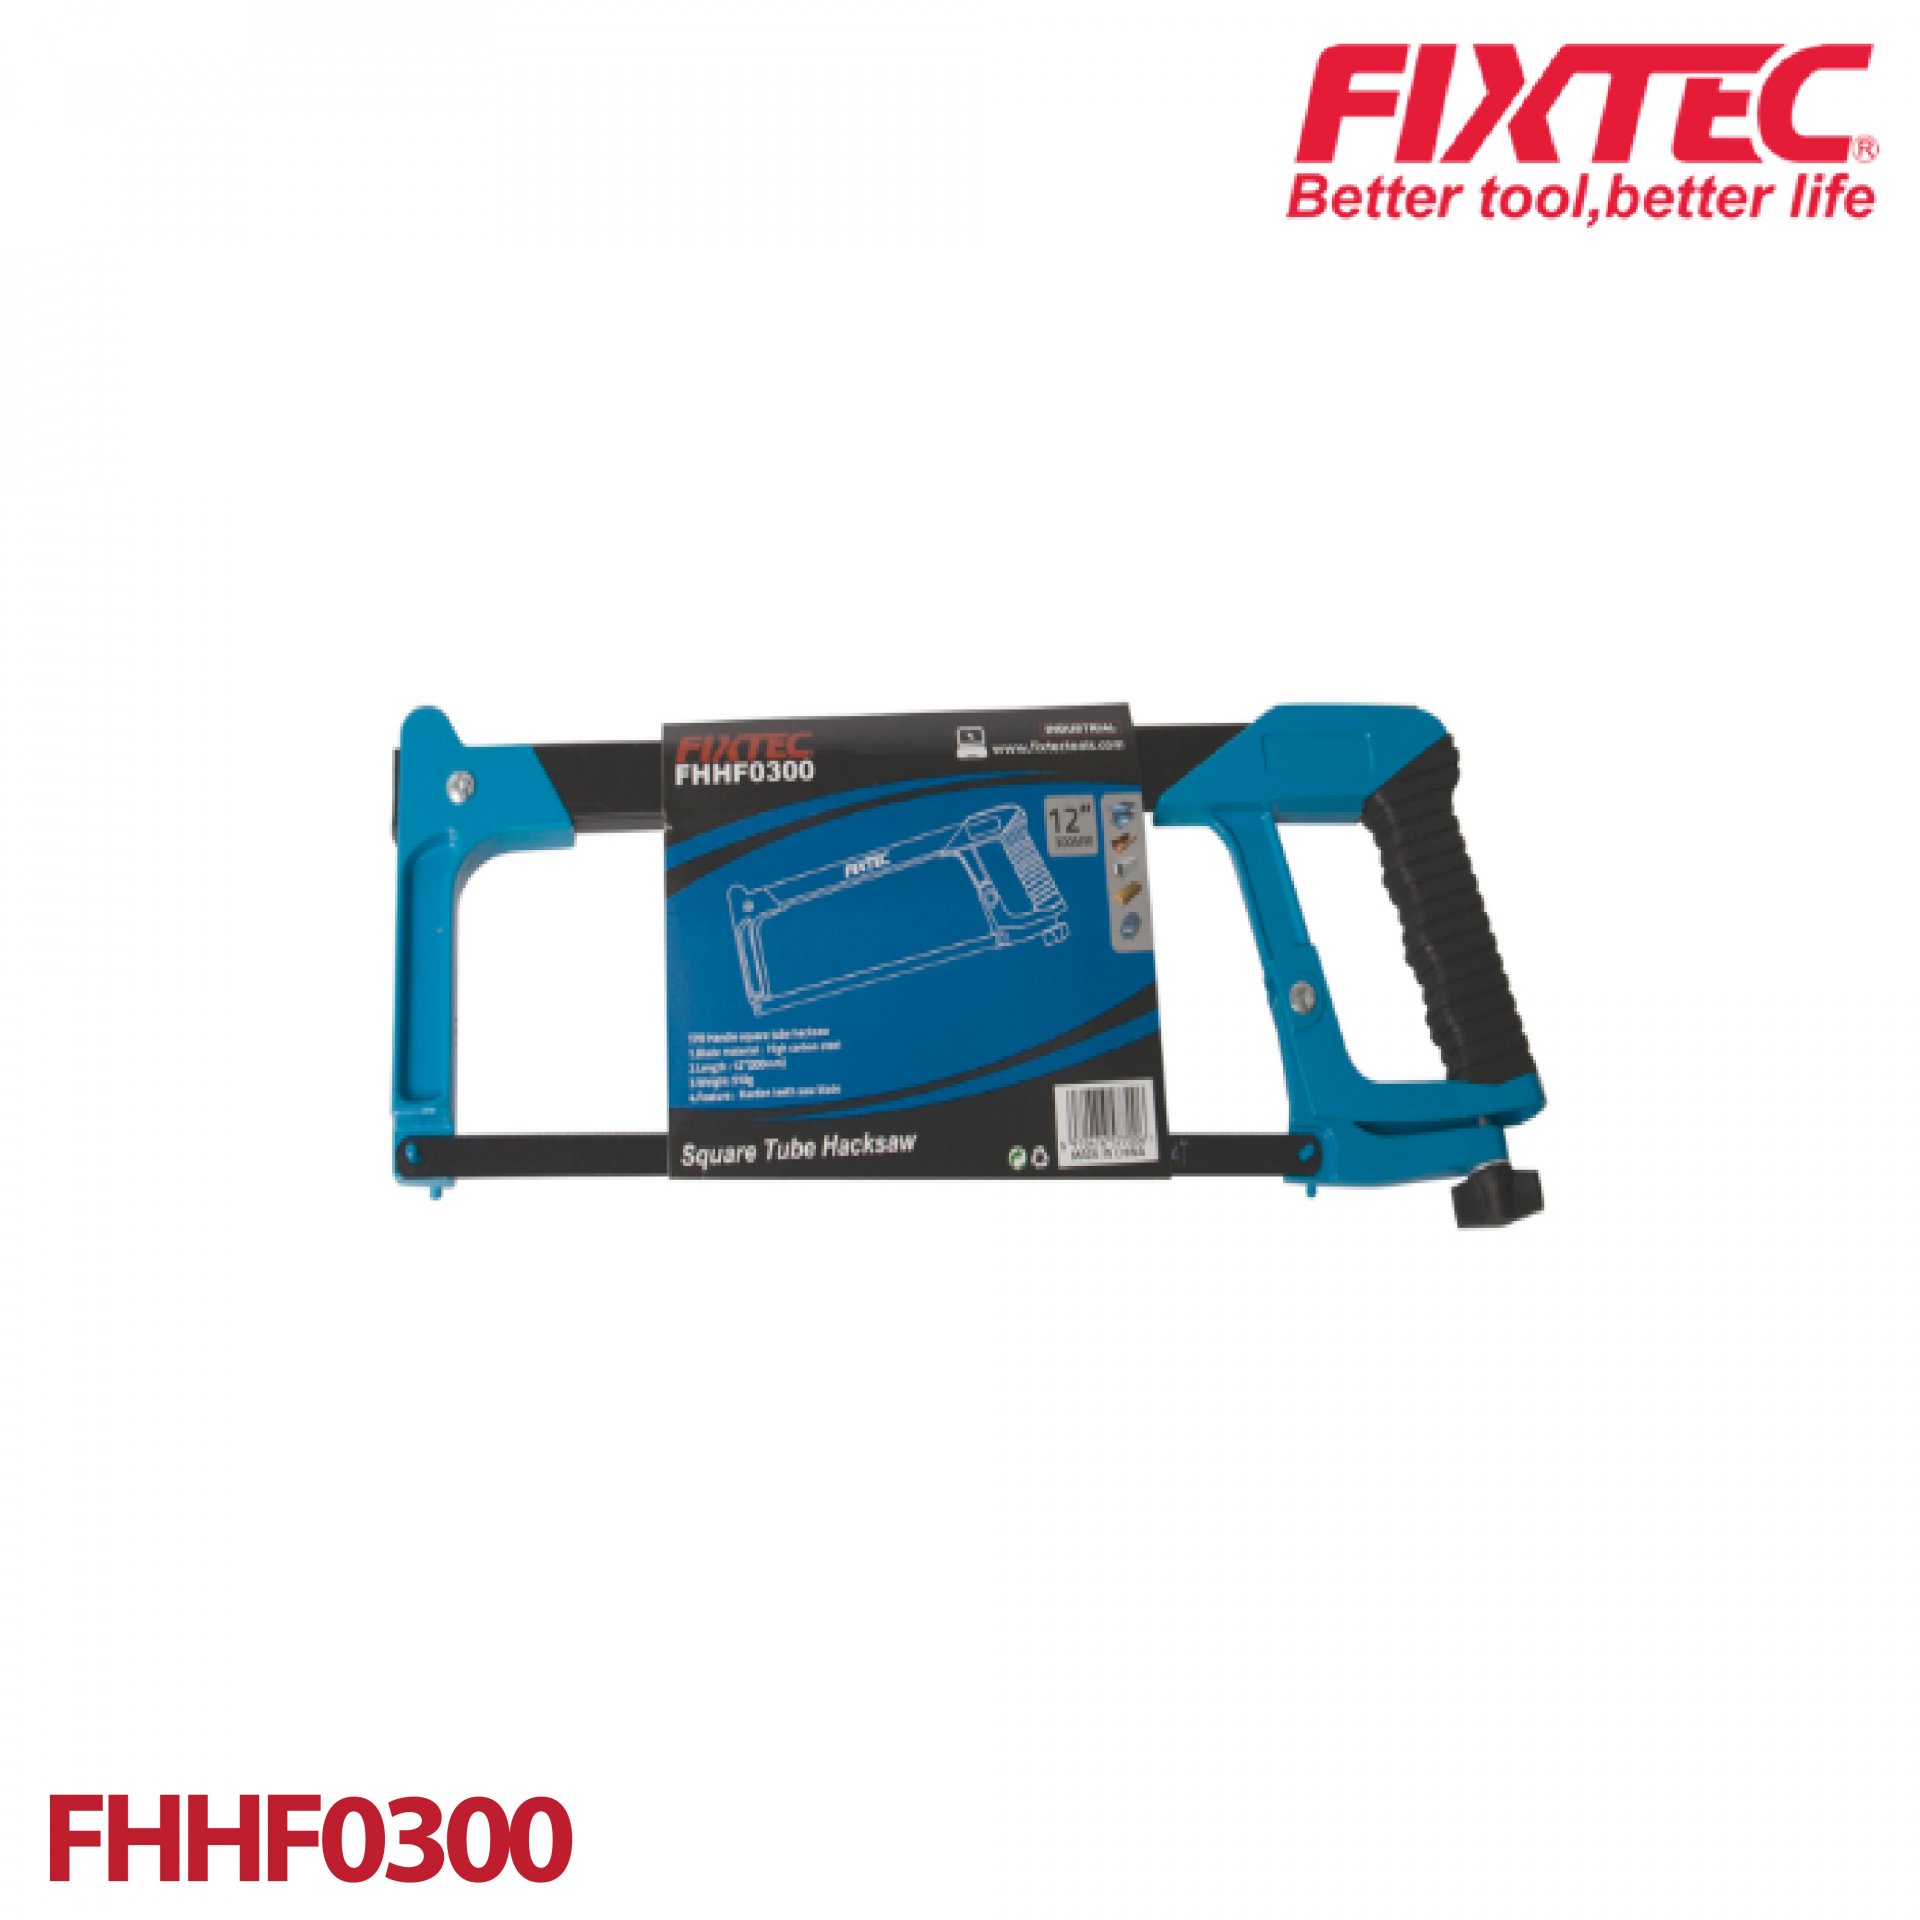 โครงเลื่อยตัดเหล็ก 12" FIXTEC FHHF0300